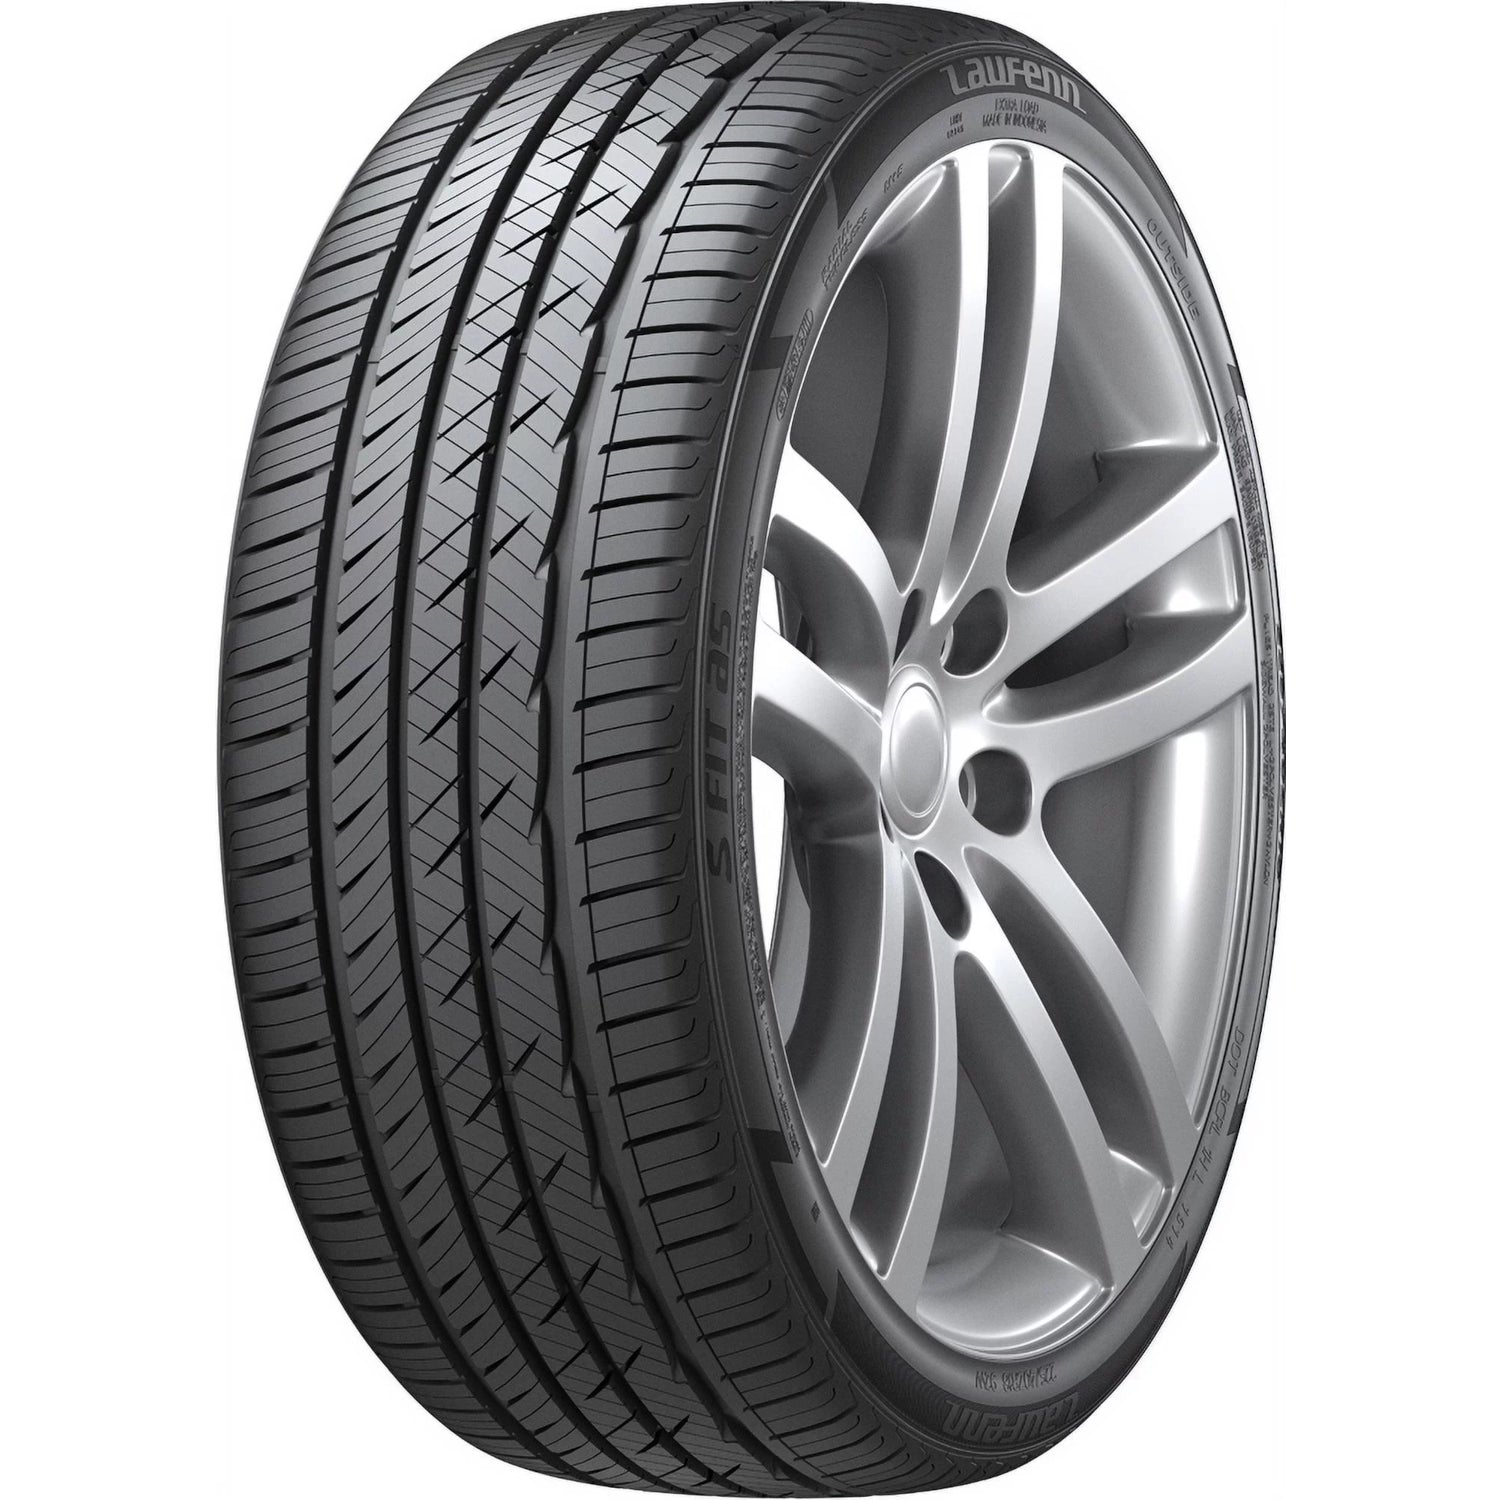 LAUFENN S FIT AS 225/45ZR17 (25X8.9R 17) Tires